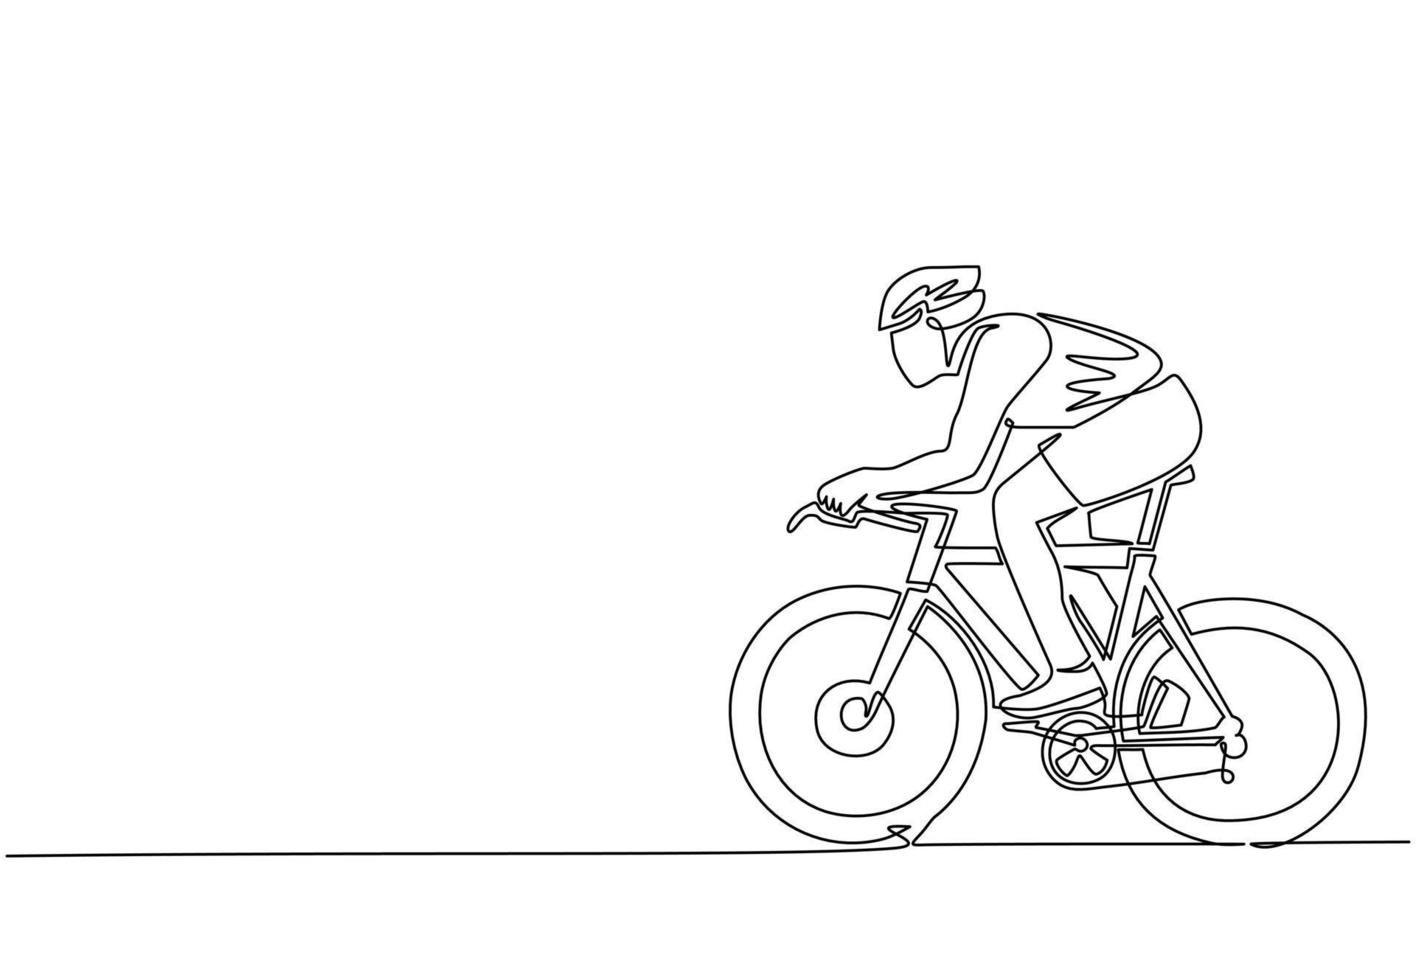 único desenho de linha contínua jovem piloto de bicicleta enérgico melhorar sua velocidade na sessão de treinamento. conceito de ciclista de corrida. evento esportivo de ciclismo saudável. vetor de design gráfico de desenho dinâmico de uma linha